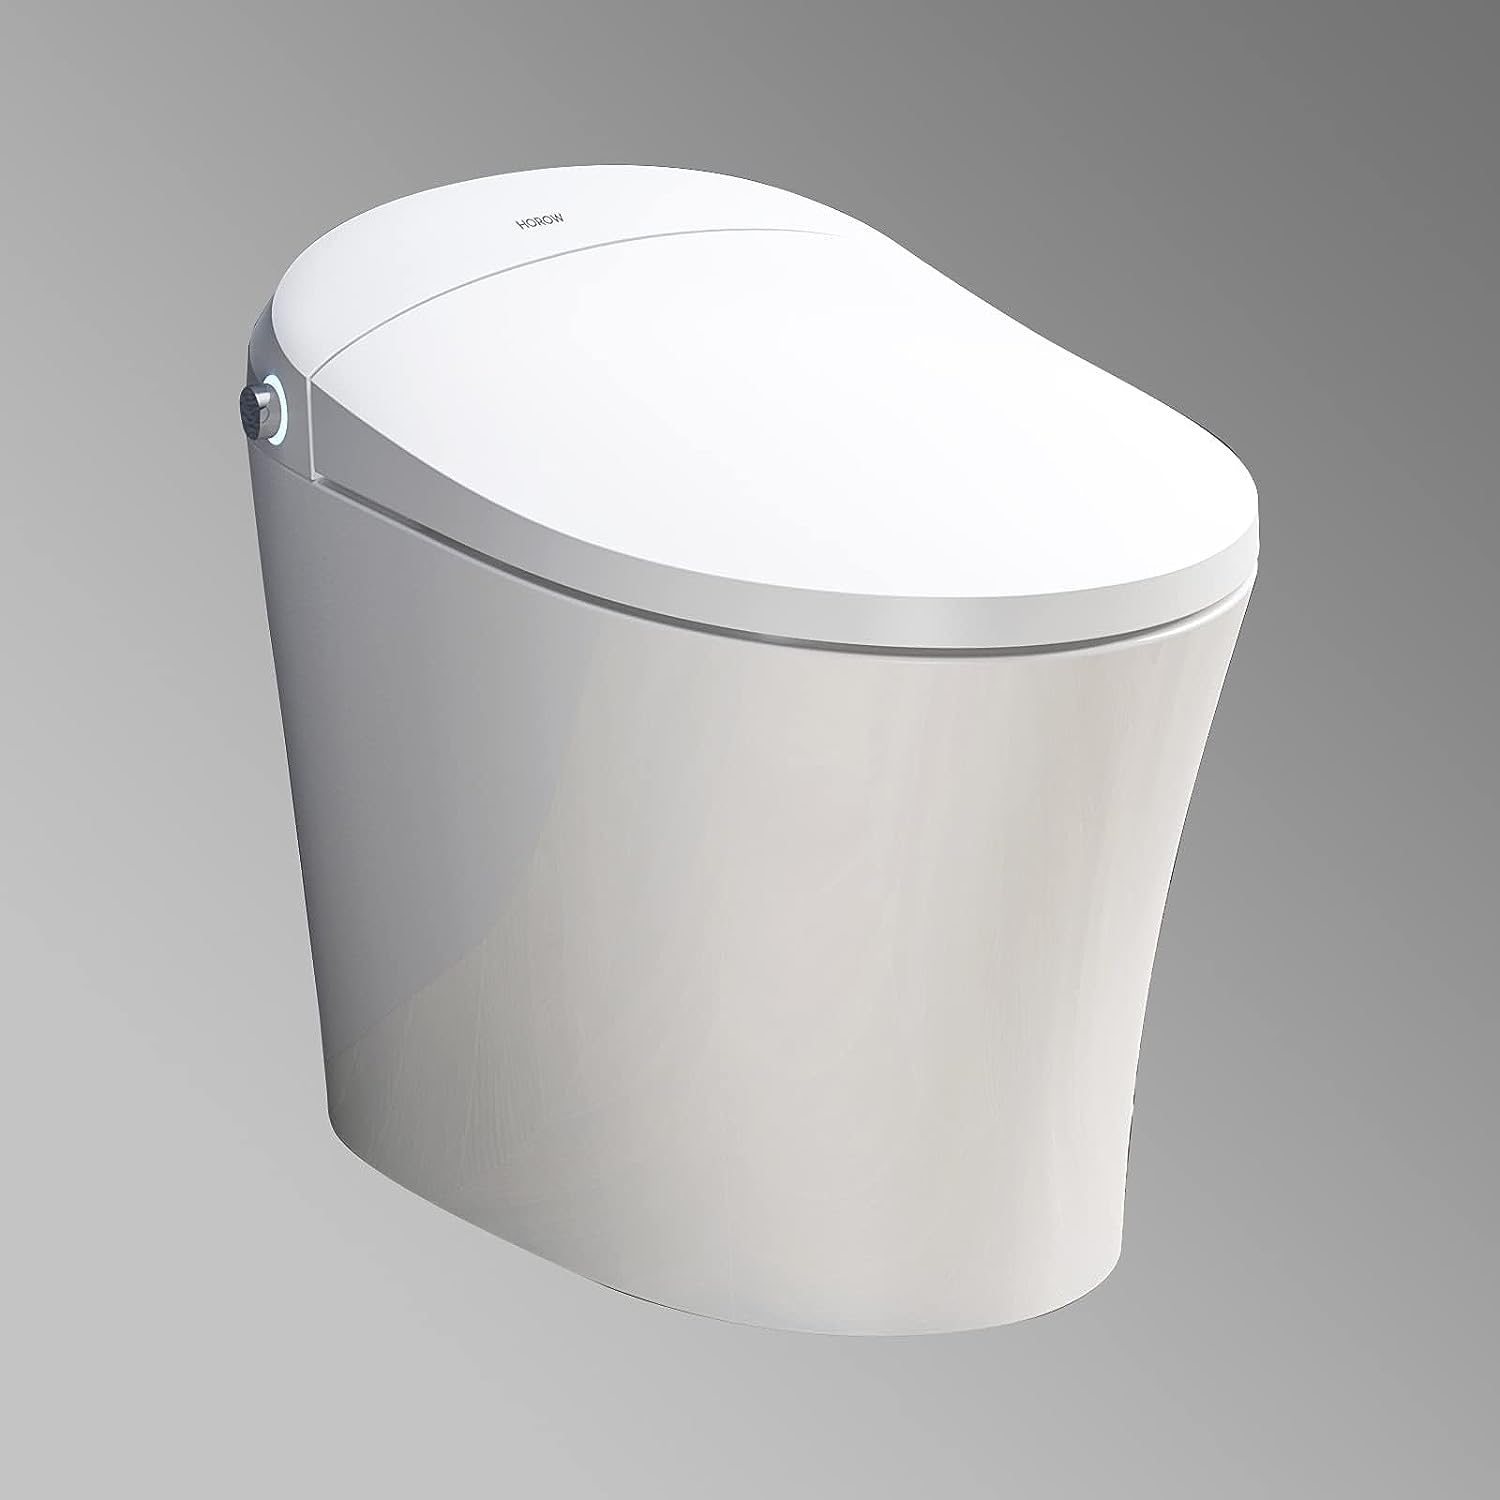 HOROW HR T10S Smart Toilet